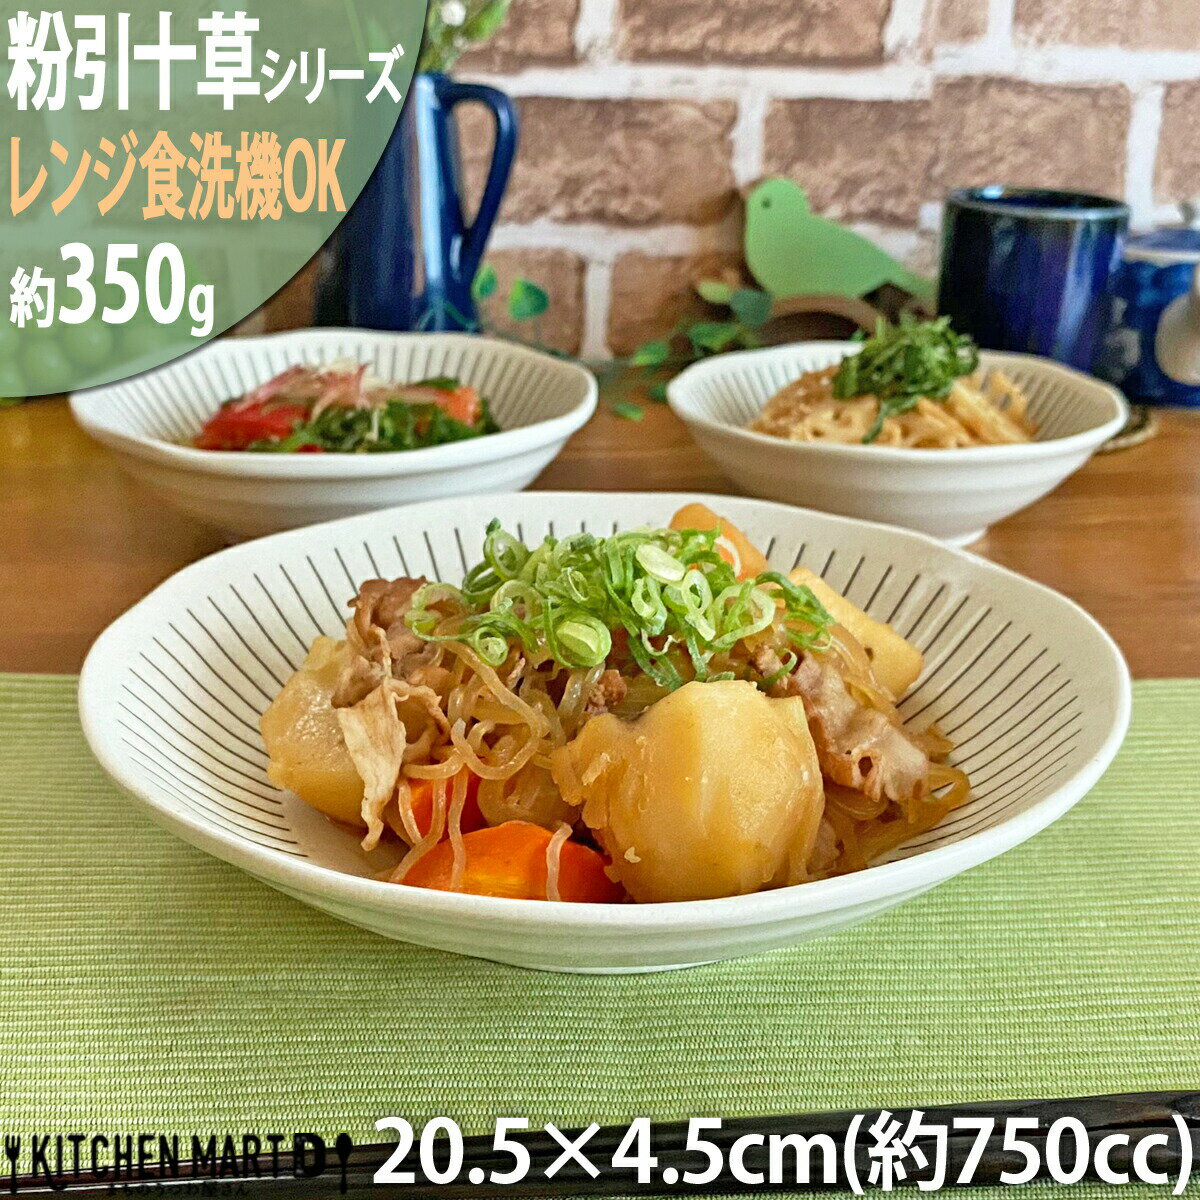 粉引十草 8.0 スープ 20.5×4.5cm 丸皿 